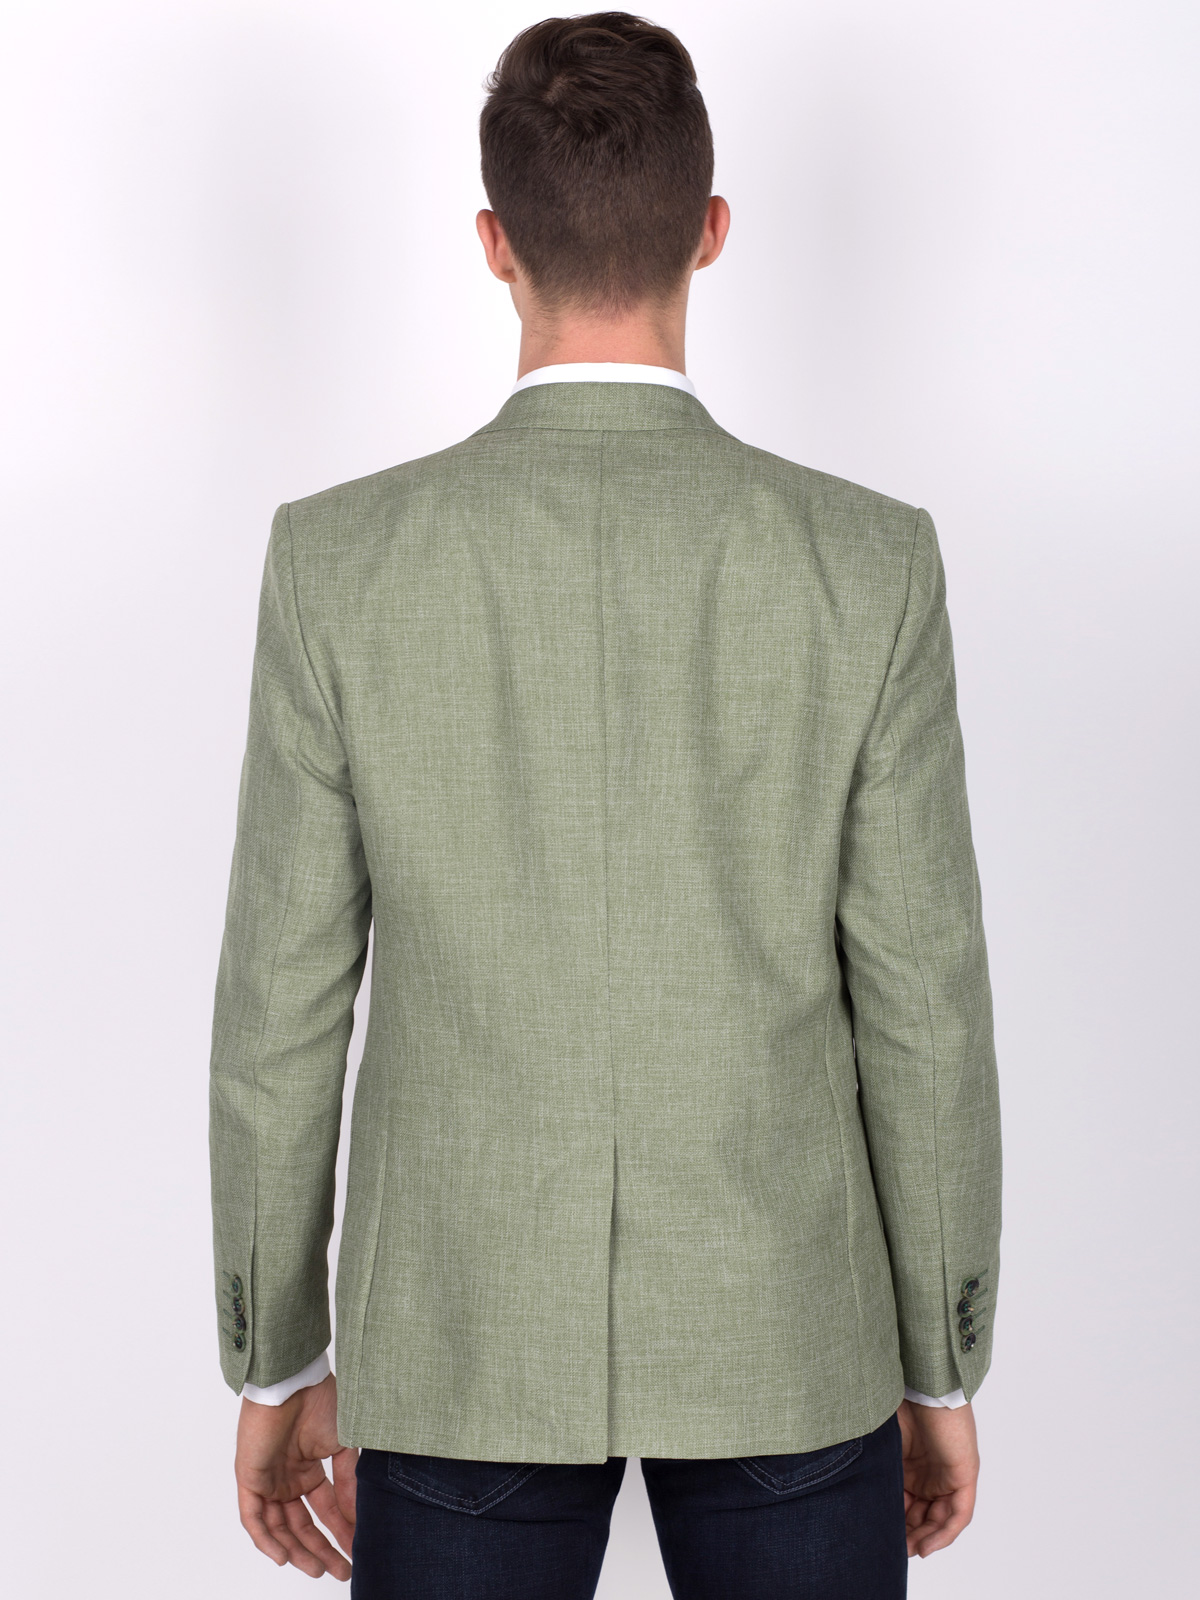 Jacheta verde din in si bumbac - 64090 € 50.06 img4